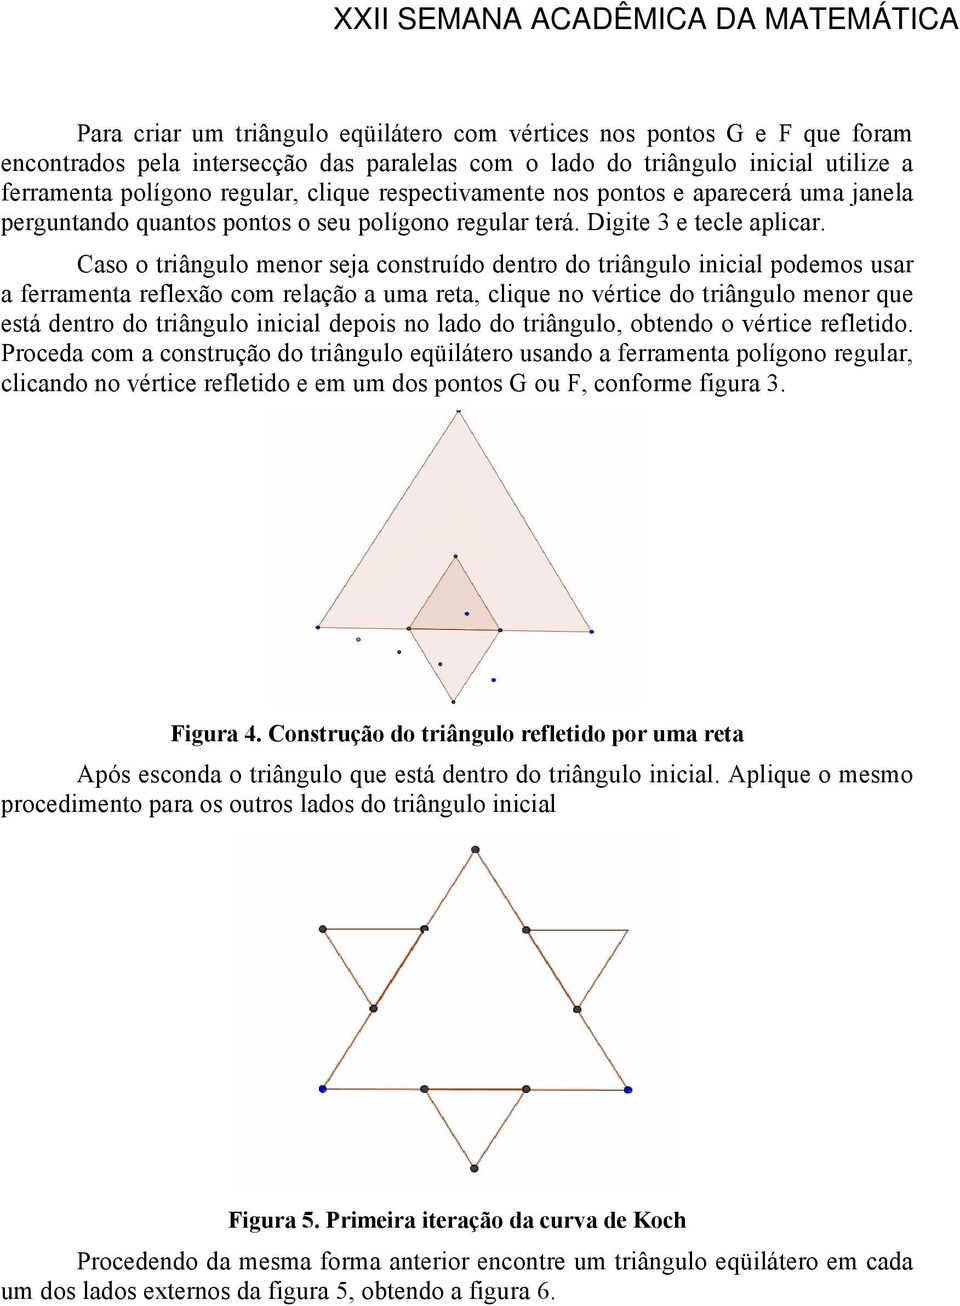 Caso o triângulo menor seja construído dentro do triângulo inicial podemos usar a ferramenta reflexão com relação a uma reta, clique no vértice do triângulo menor que está dentro do triângulo inicial